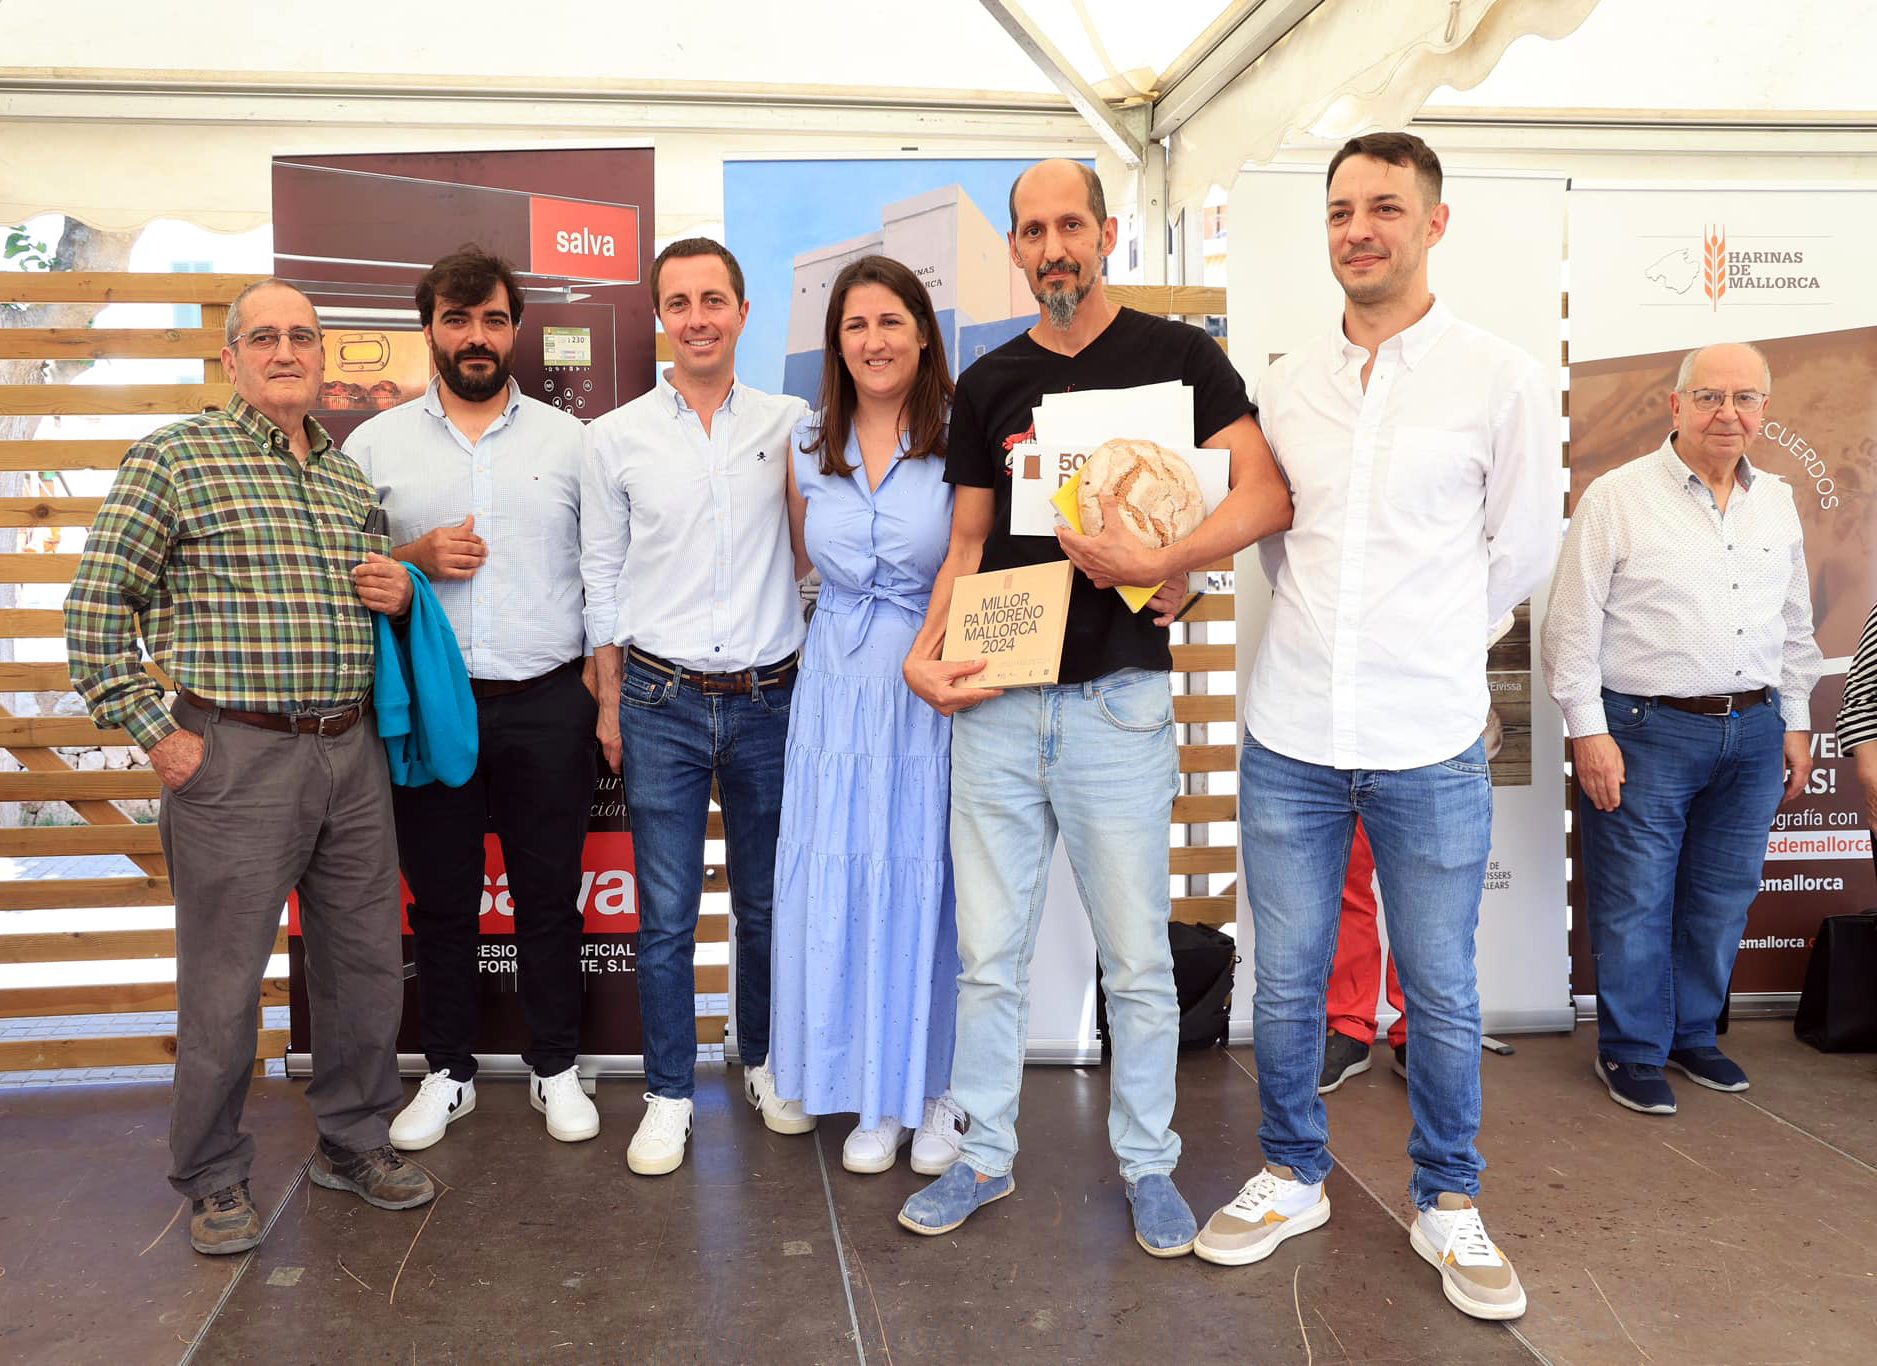 El Forn Formentor de Pollença, premi al millor pa moreno de Mallorca